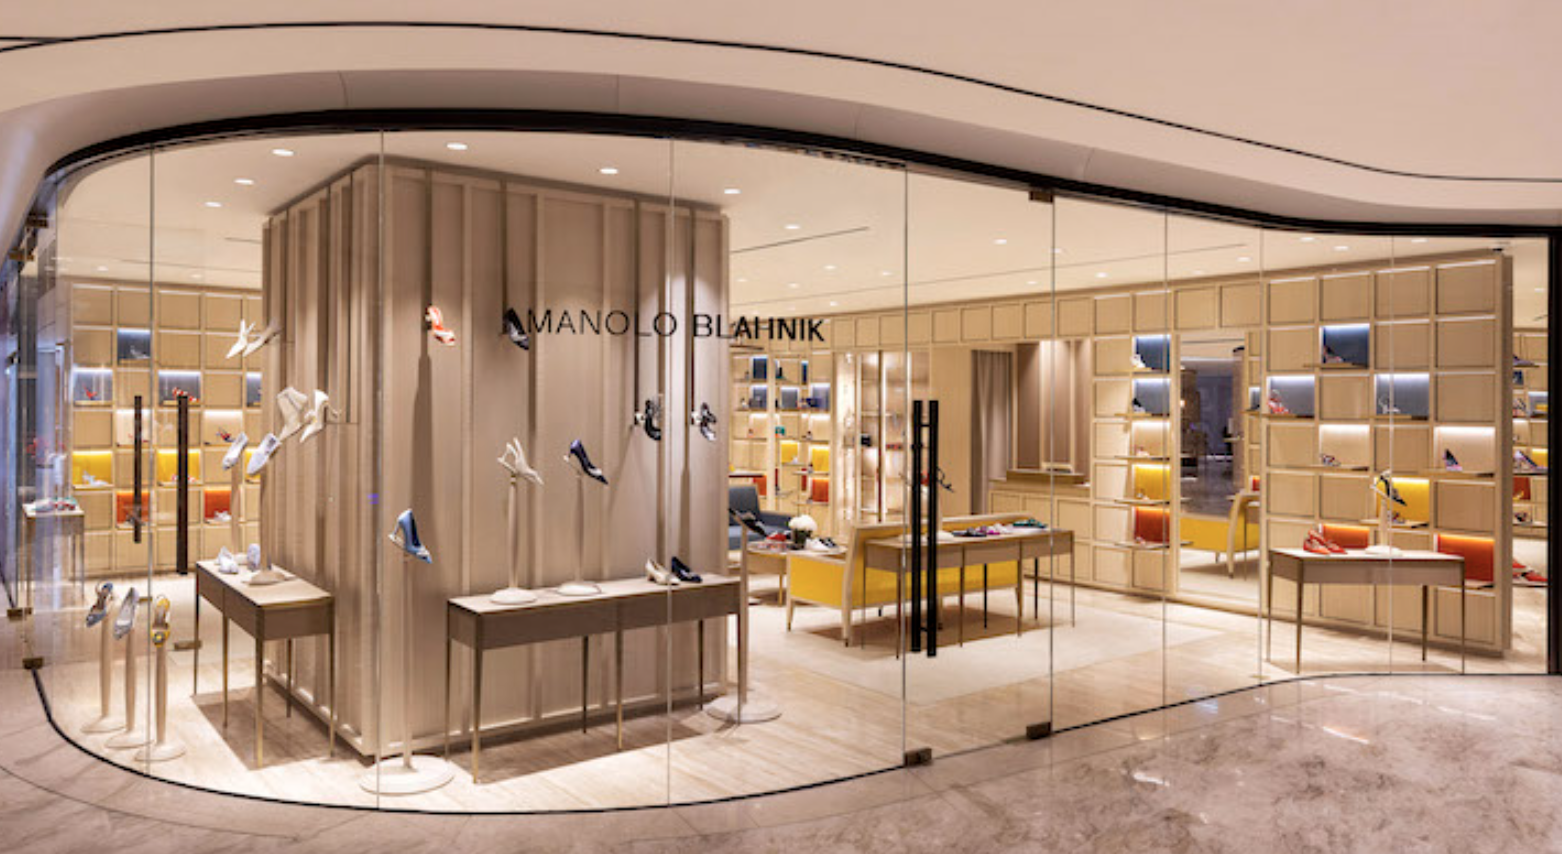 英国奢华鞋履品牌 Manolo Blahnik 香港首店在利园开业